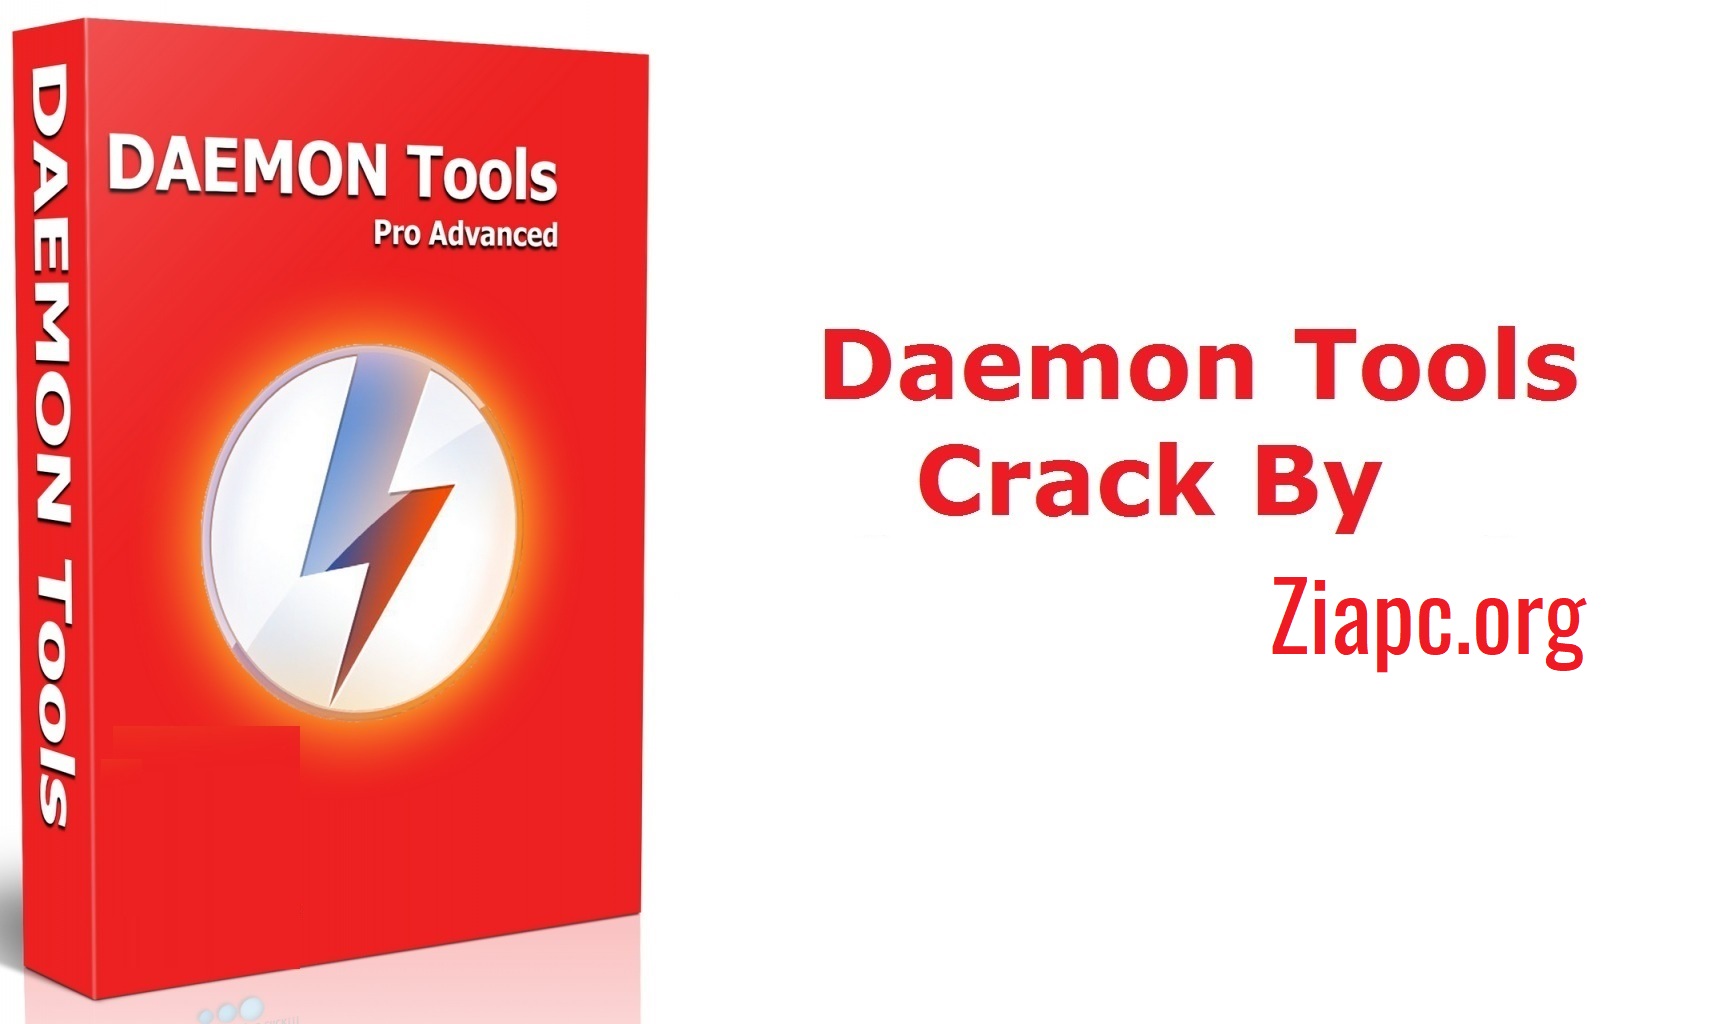 daemon tools pro serial key download